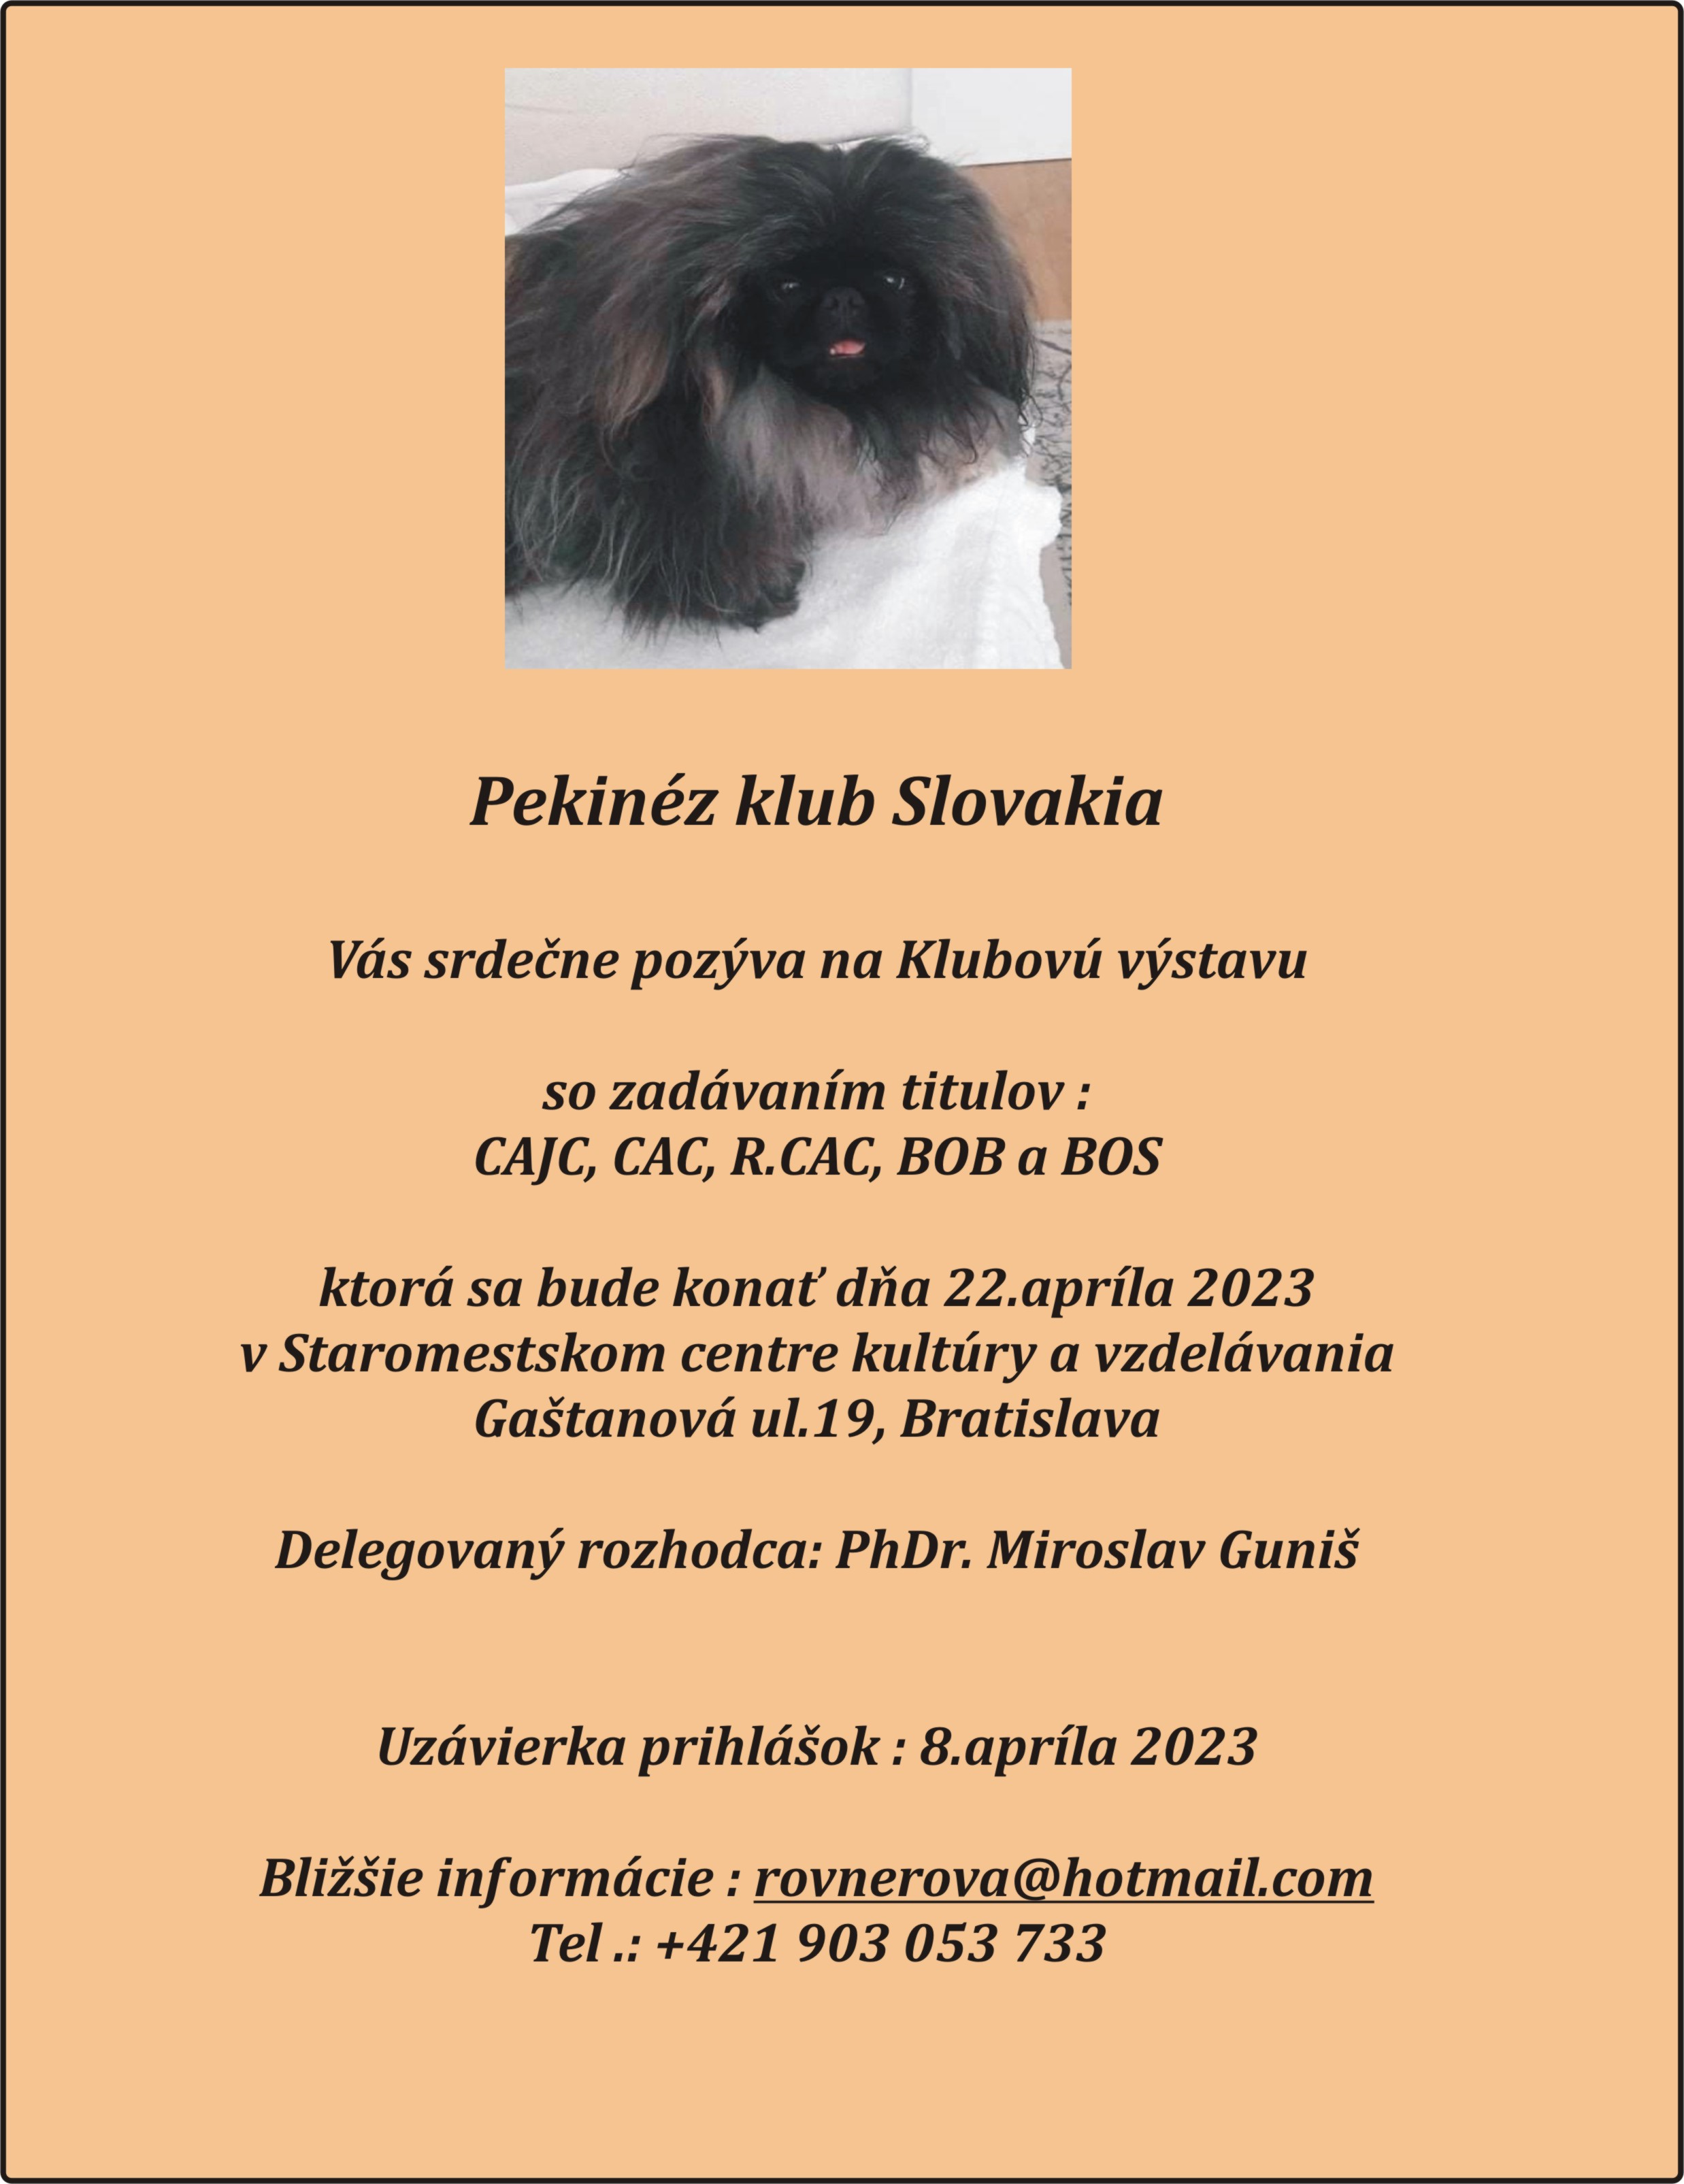 Pozvánka na klubovou výstavu Pekinéz klubu Slovakia